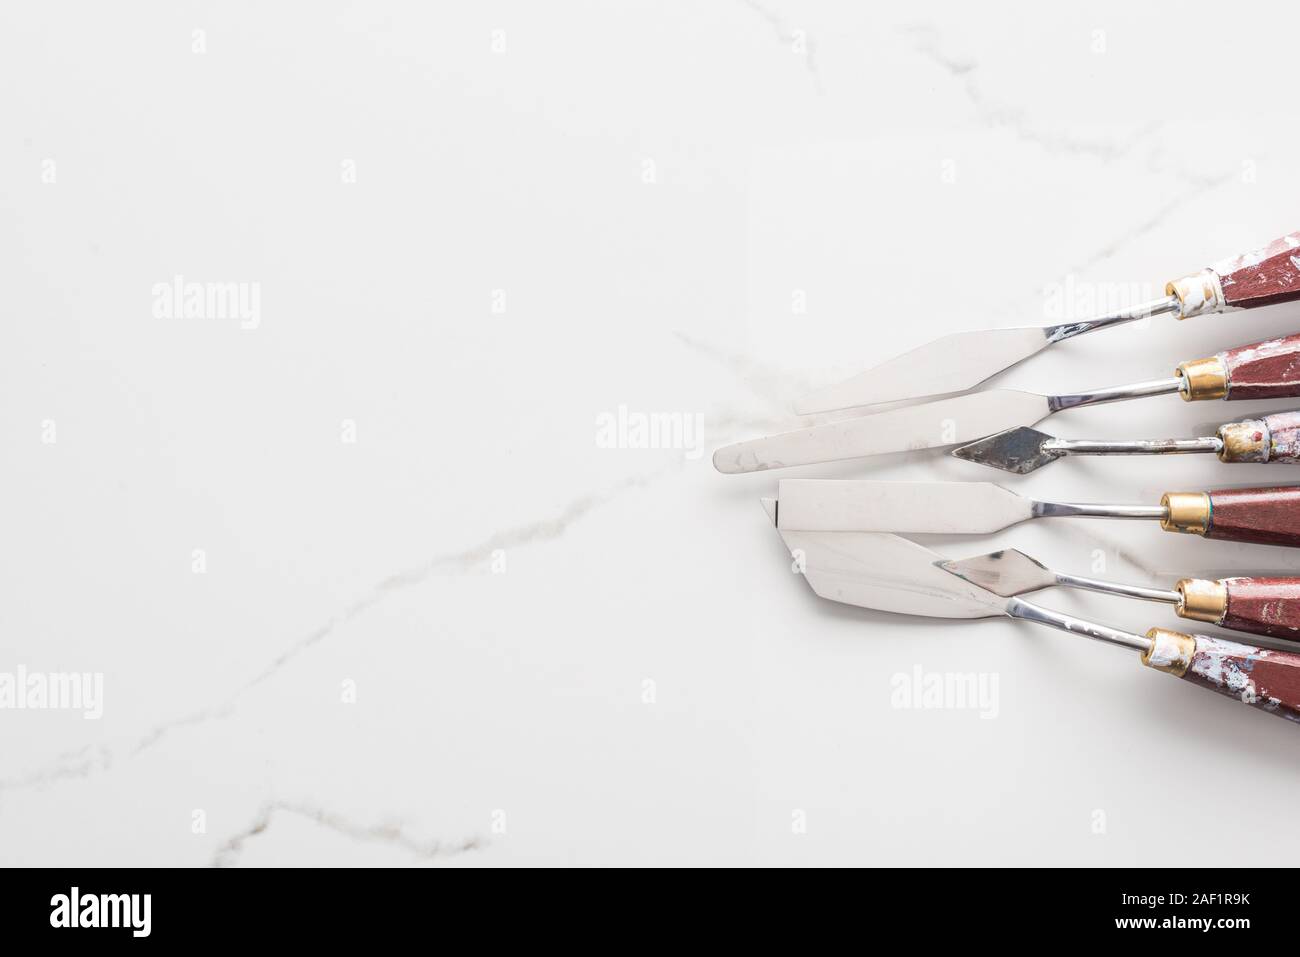 Vue de dessus de spatules pour dessiner sur le métal en surface blanche with copy space Banque D'Images